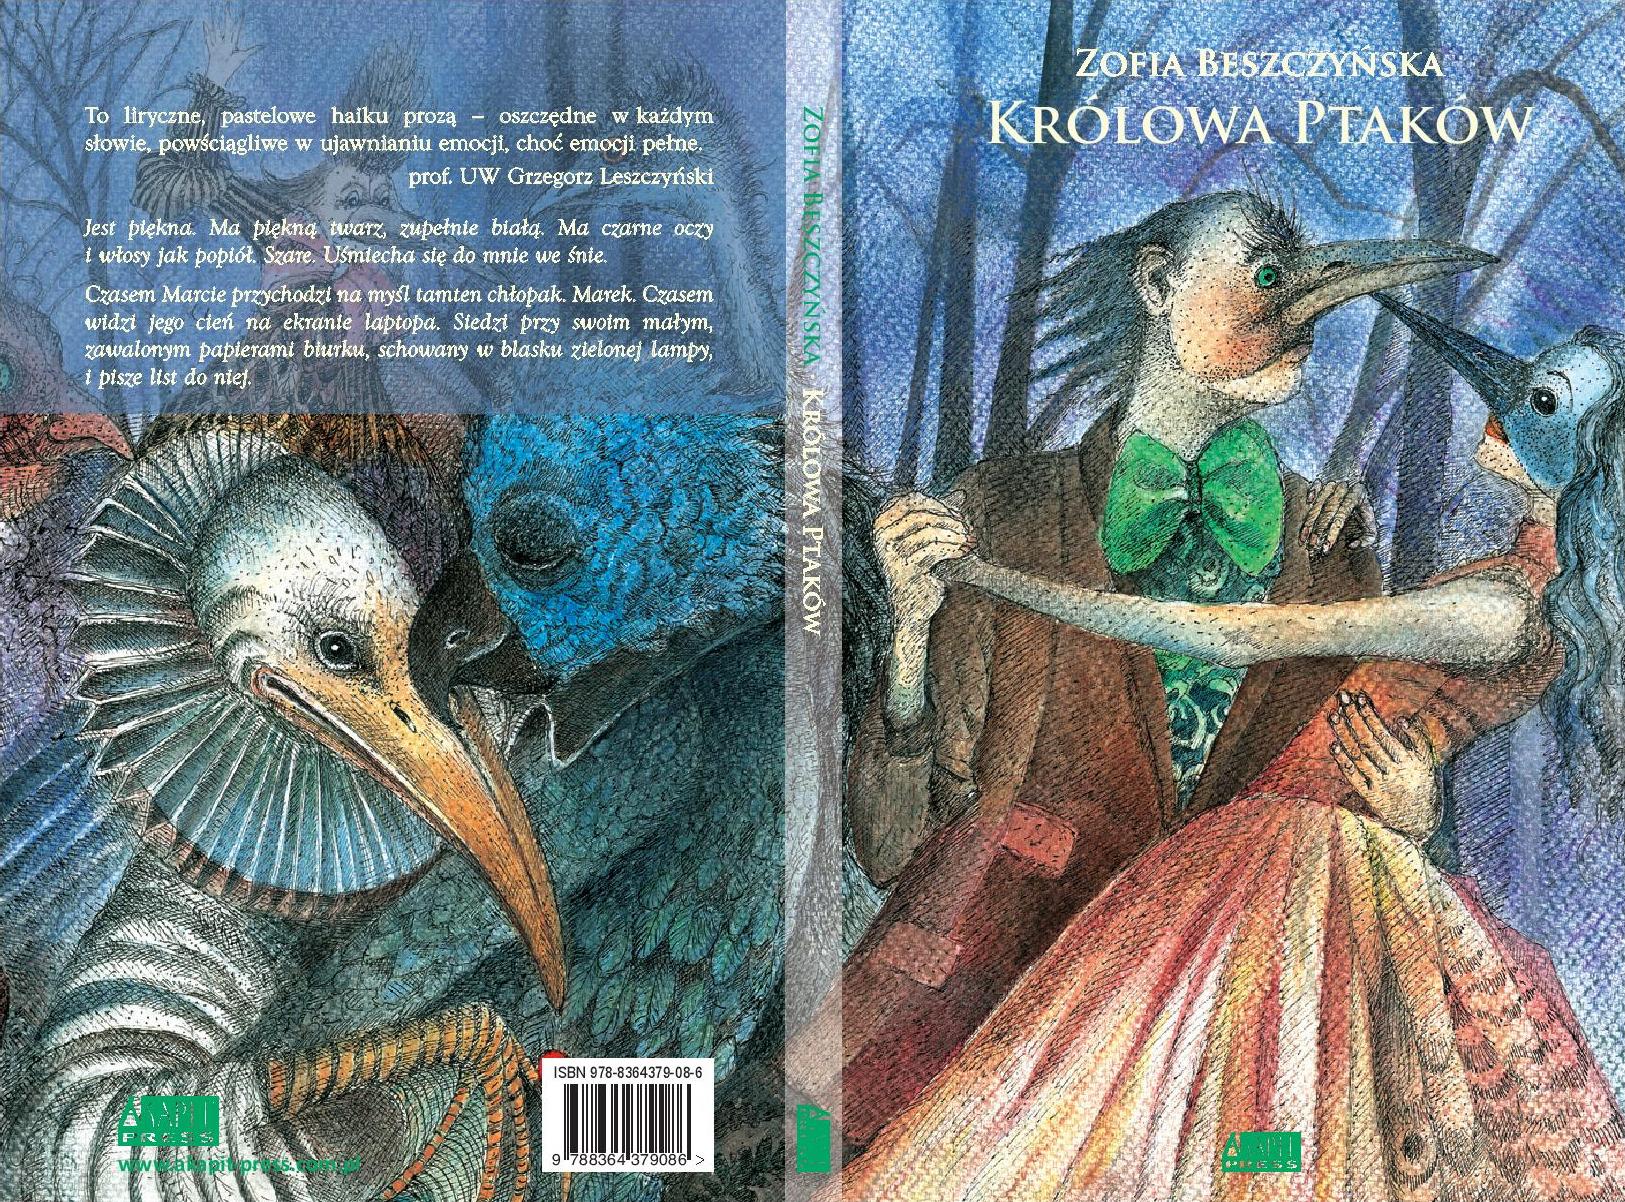 Zofia Beszczyńska, „Królowa Ptaków”, Akapit Press (źródło: materiały prasowe)